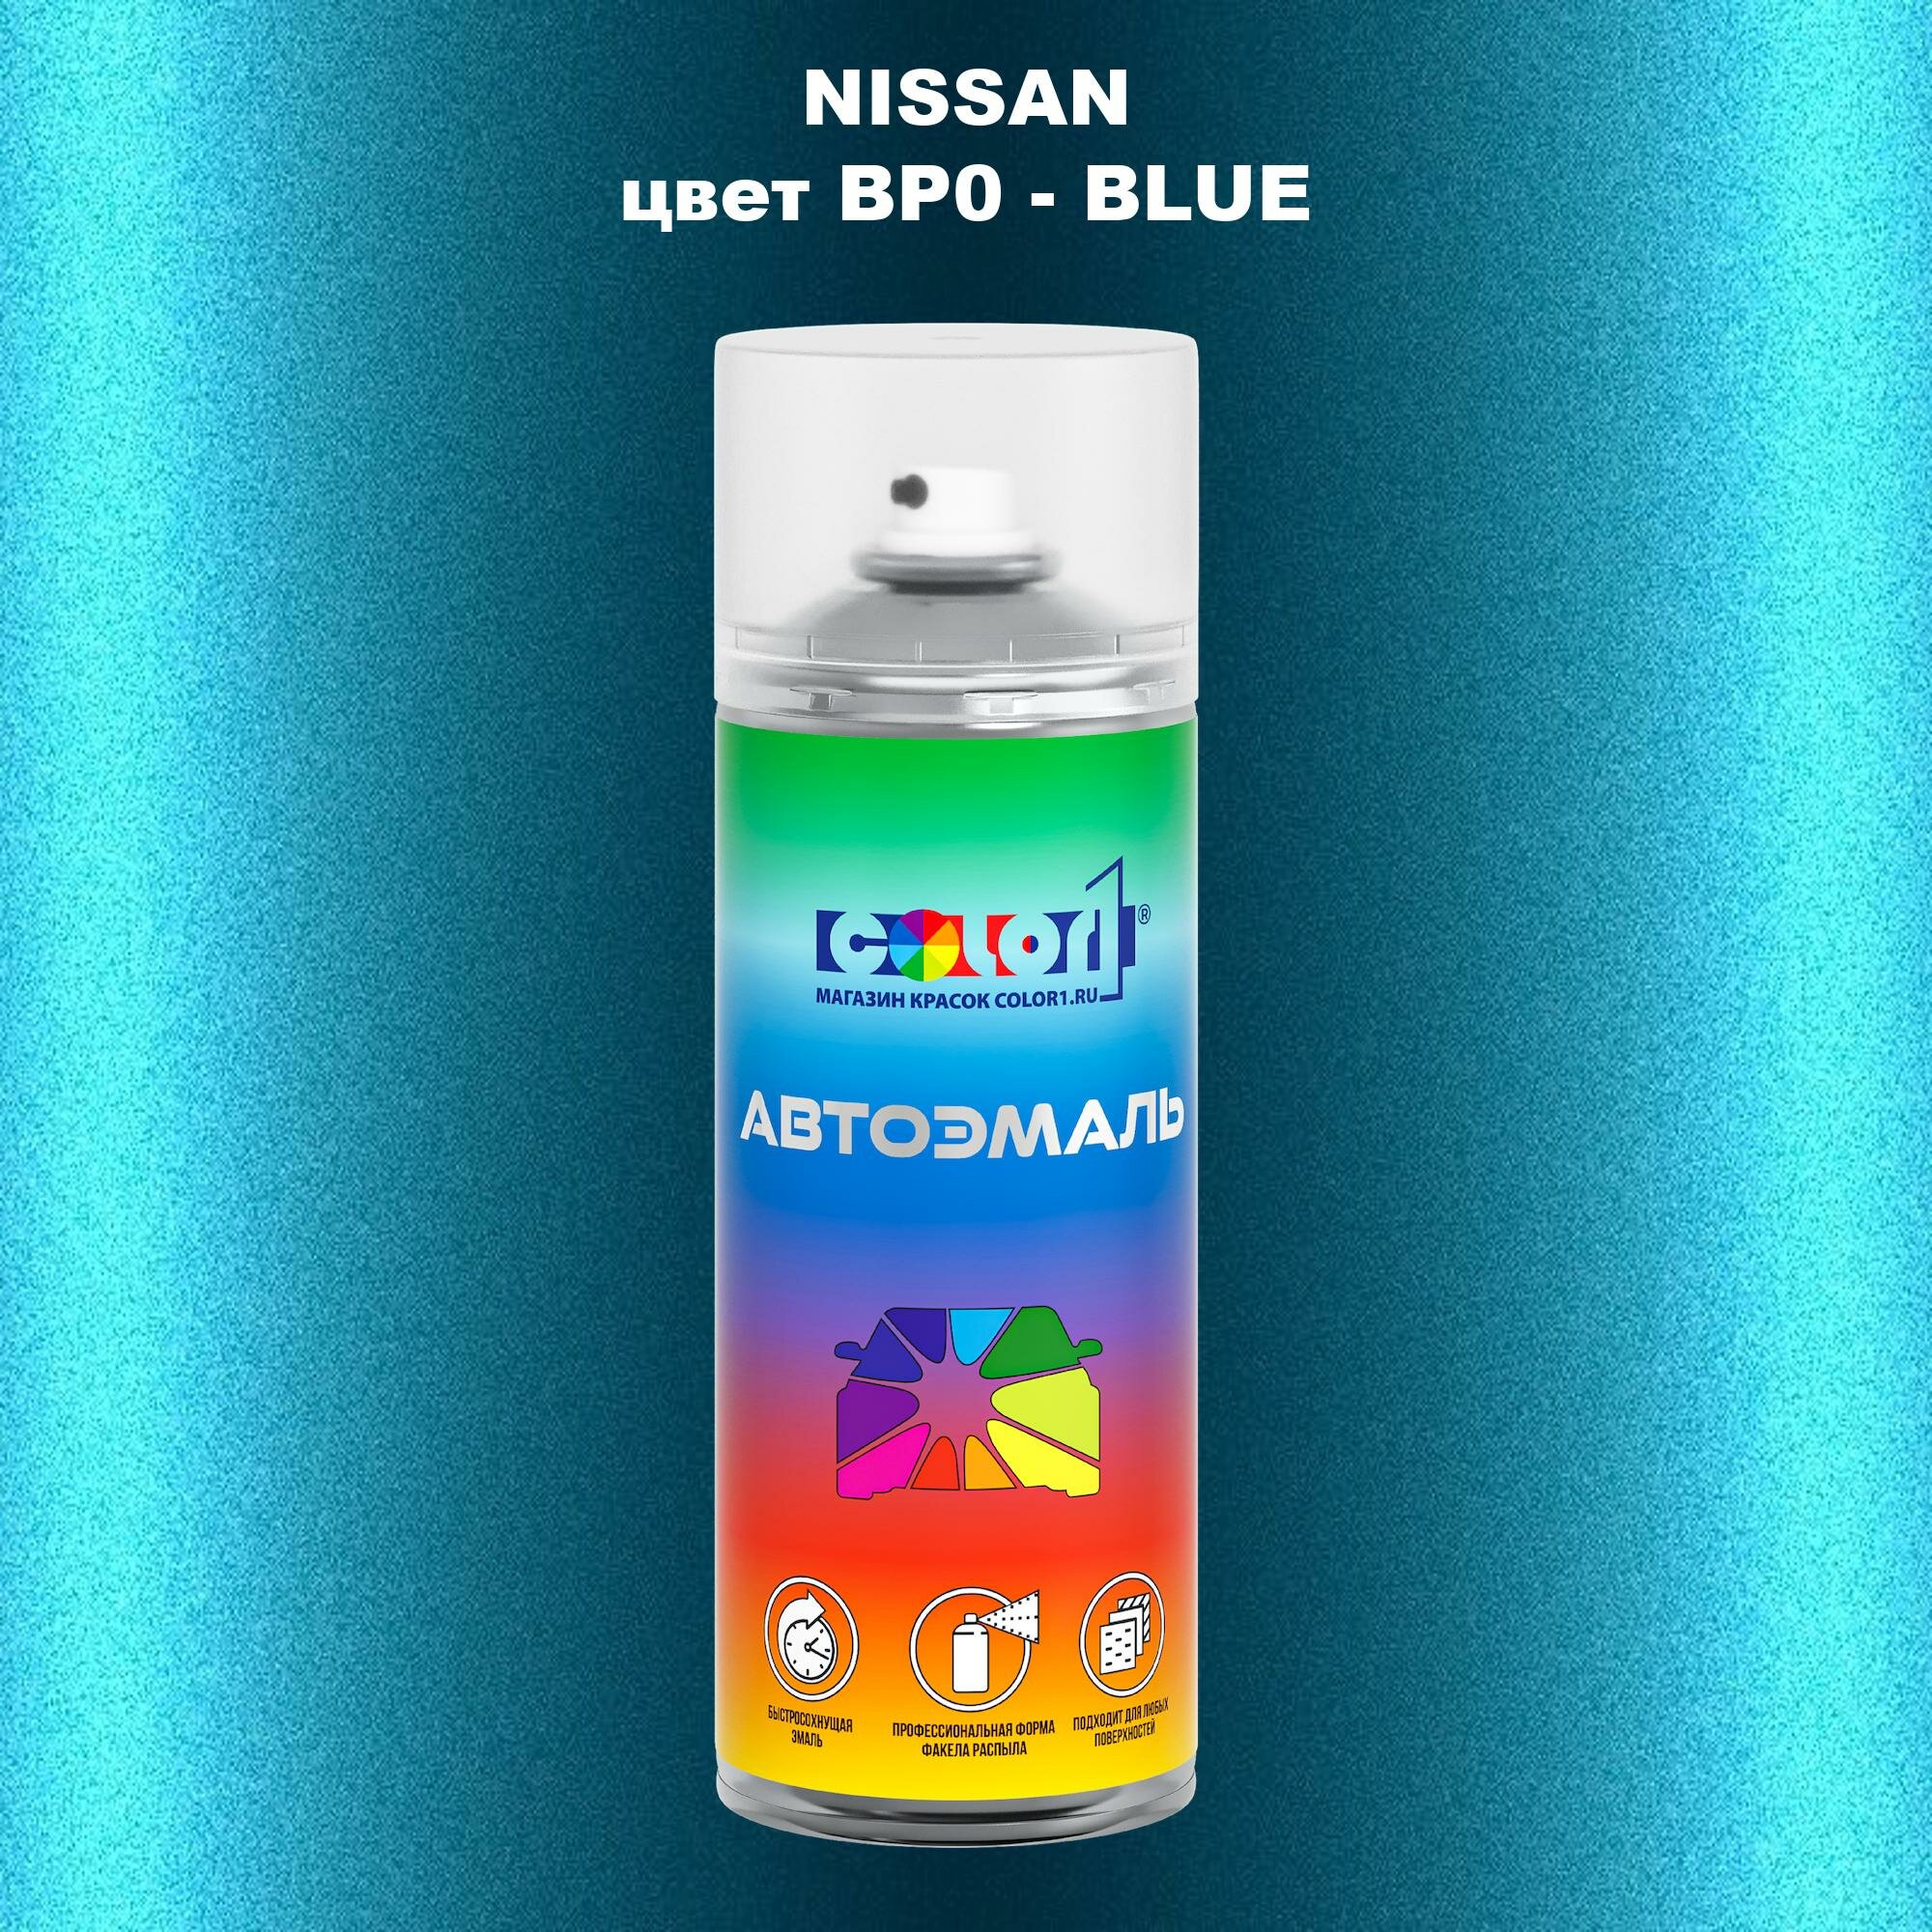 Аэрозольная краска COLOR1 для NISSAN, цвет BP0 - BLUE